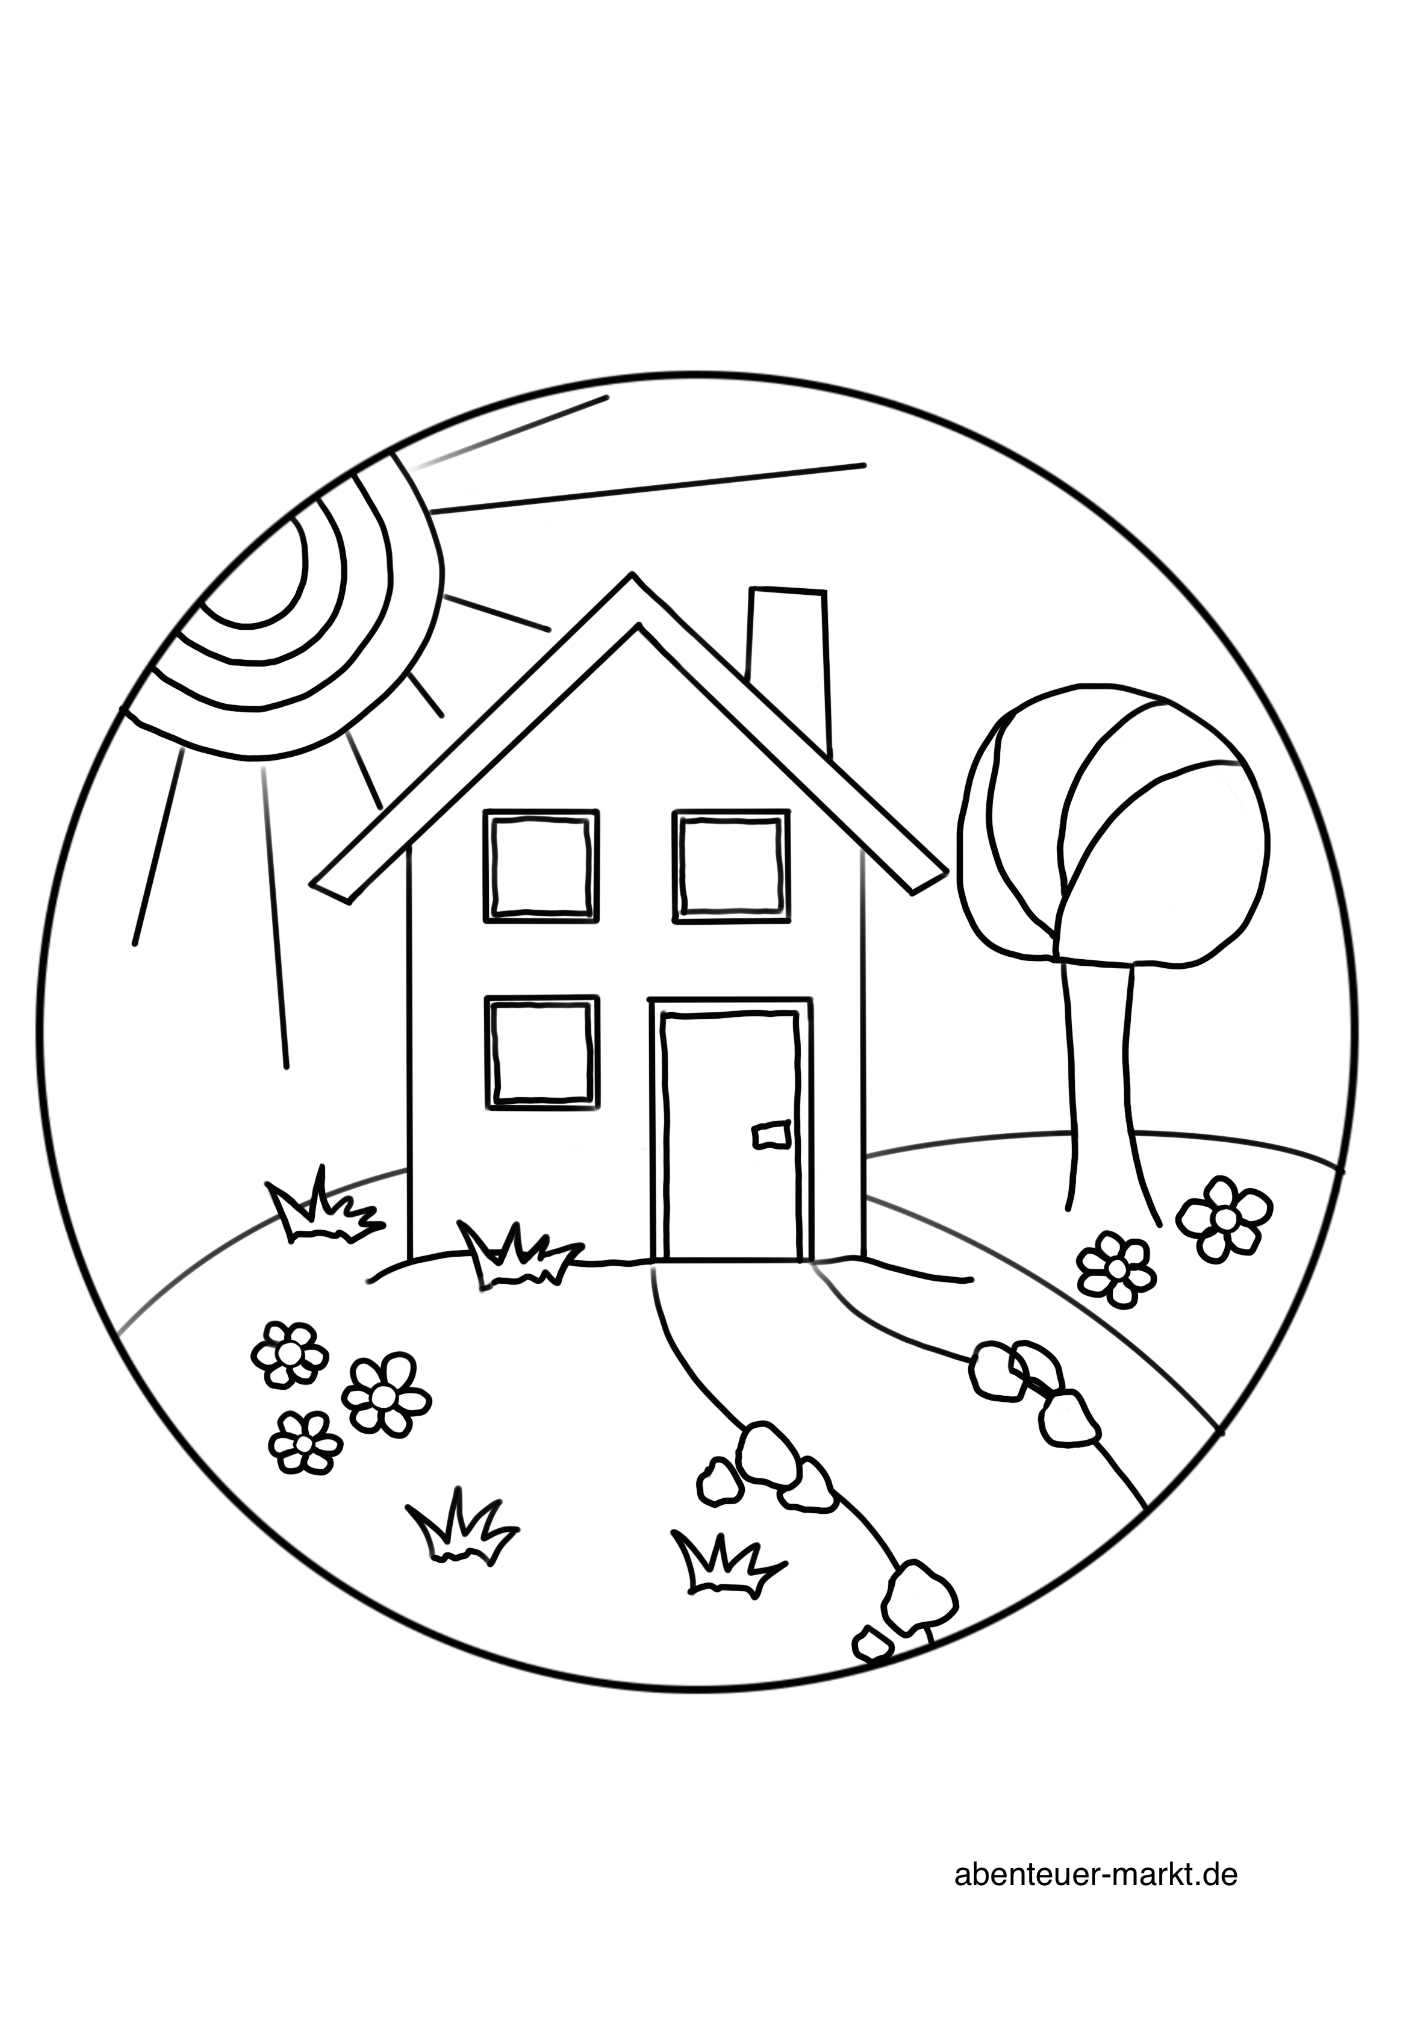 Bild zum Schritt 2 für das Bastel- und DIY-Abenteuer für Kinder: 'Haus im Grünen.'